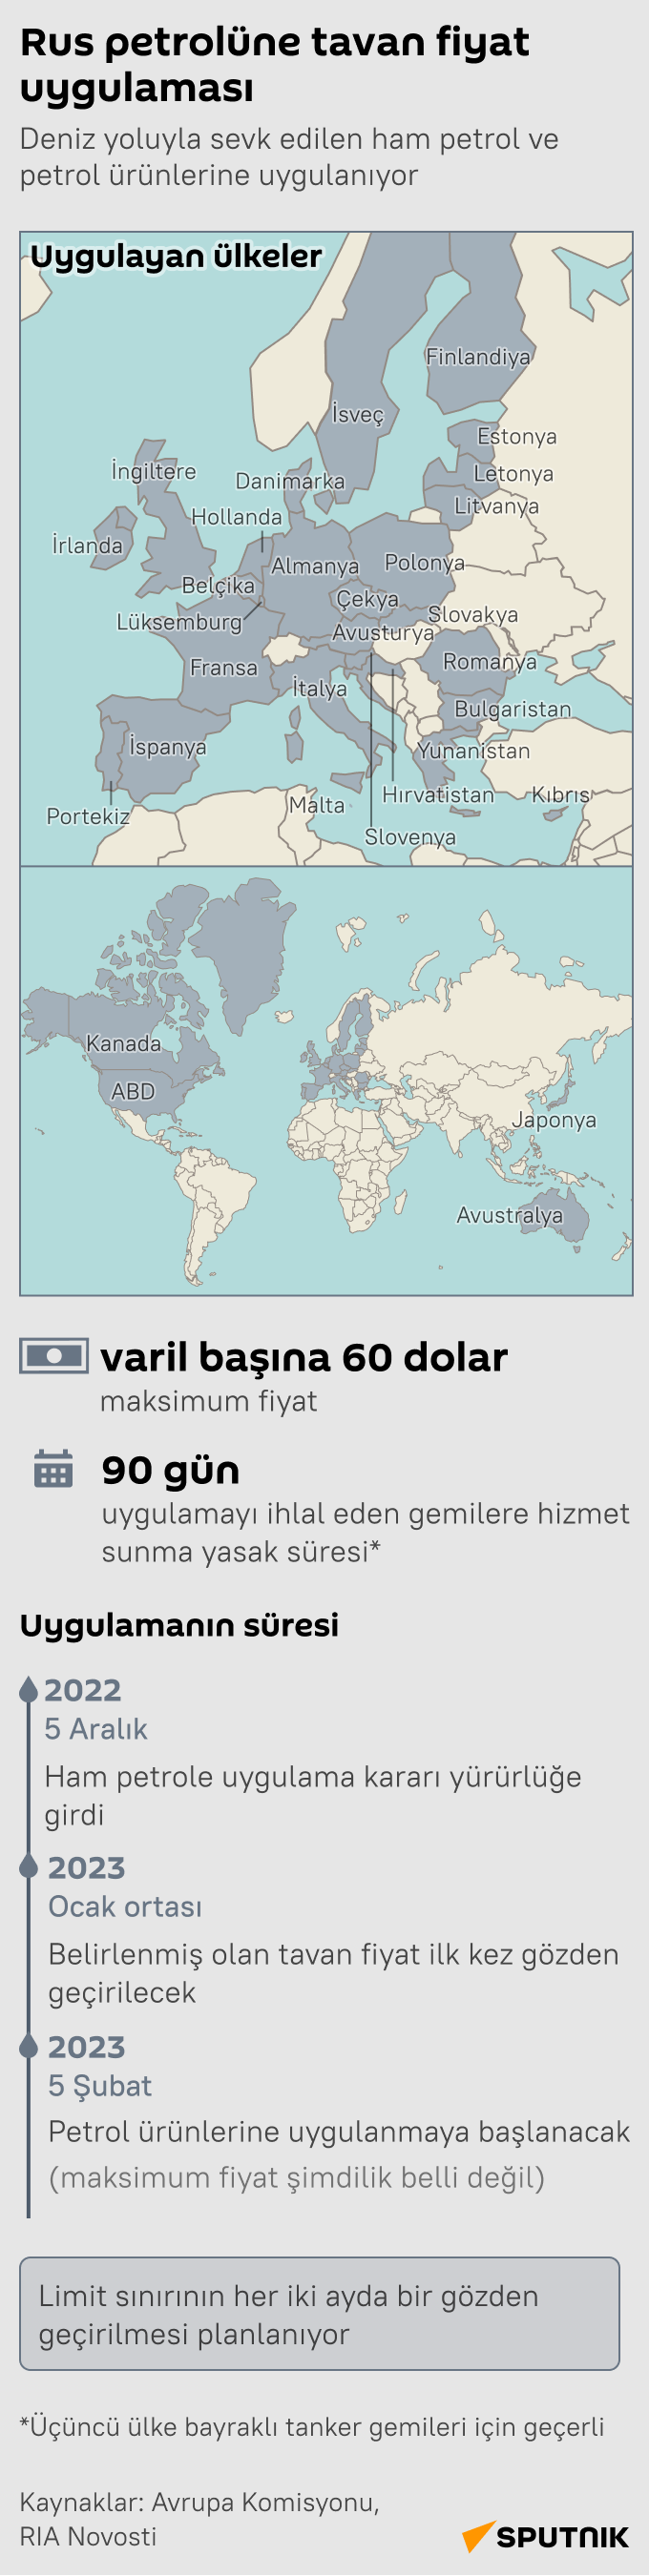 İnfografik Rus petrolüne tavan fiyat uygulaması - Sputnik Türkiye